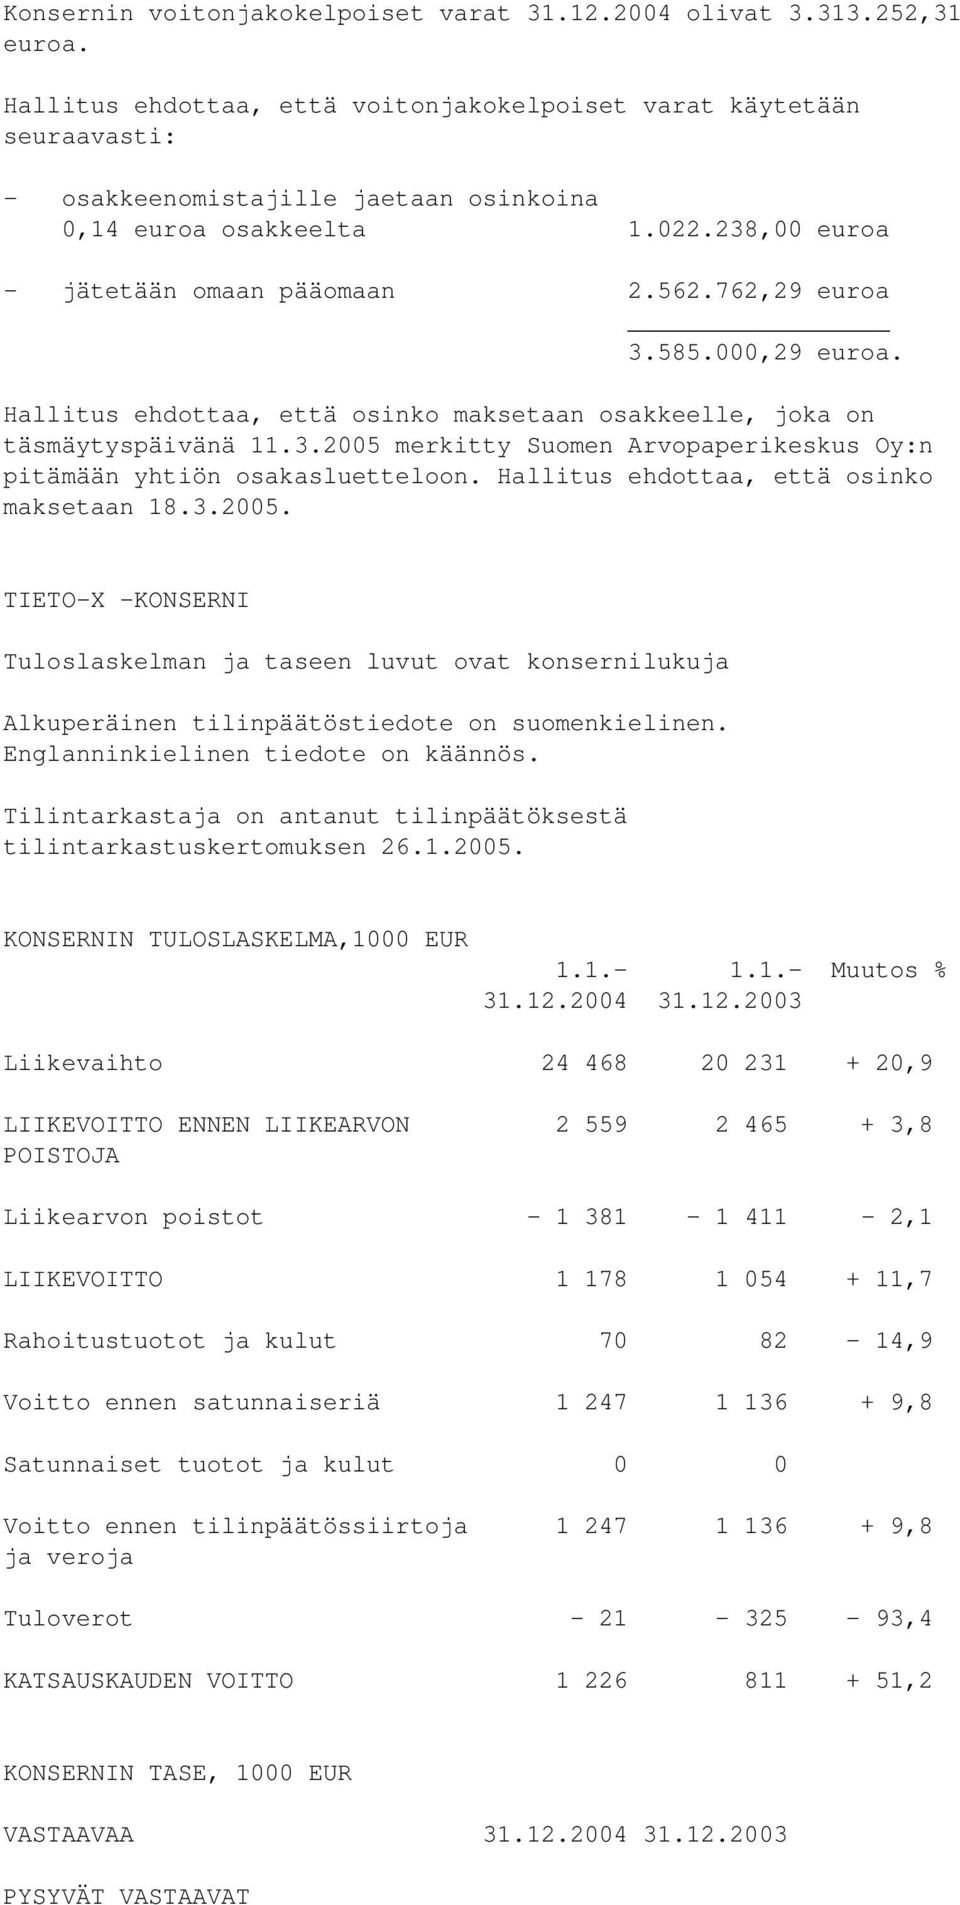 762,29 euroa 3.585.000,29 euroa. Hallitus ehdottaa, että osinko maksetaan osakkeelle, joka on täsmäytyspäivänä 11.3.2005 merkitty Suomen Arvopaperikeskus Oy:n pitämään yhtiön osakasluetteloon.